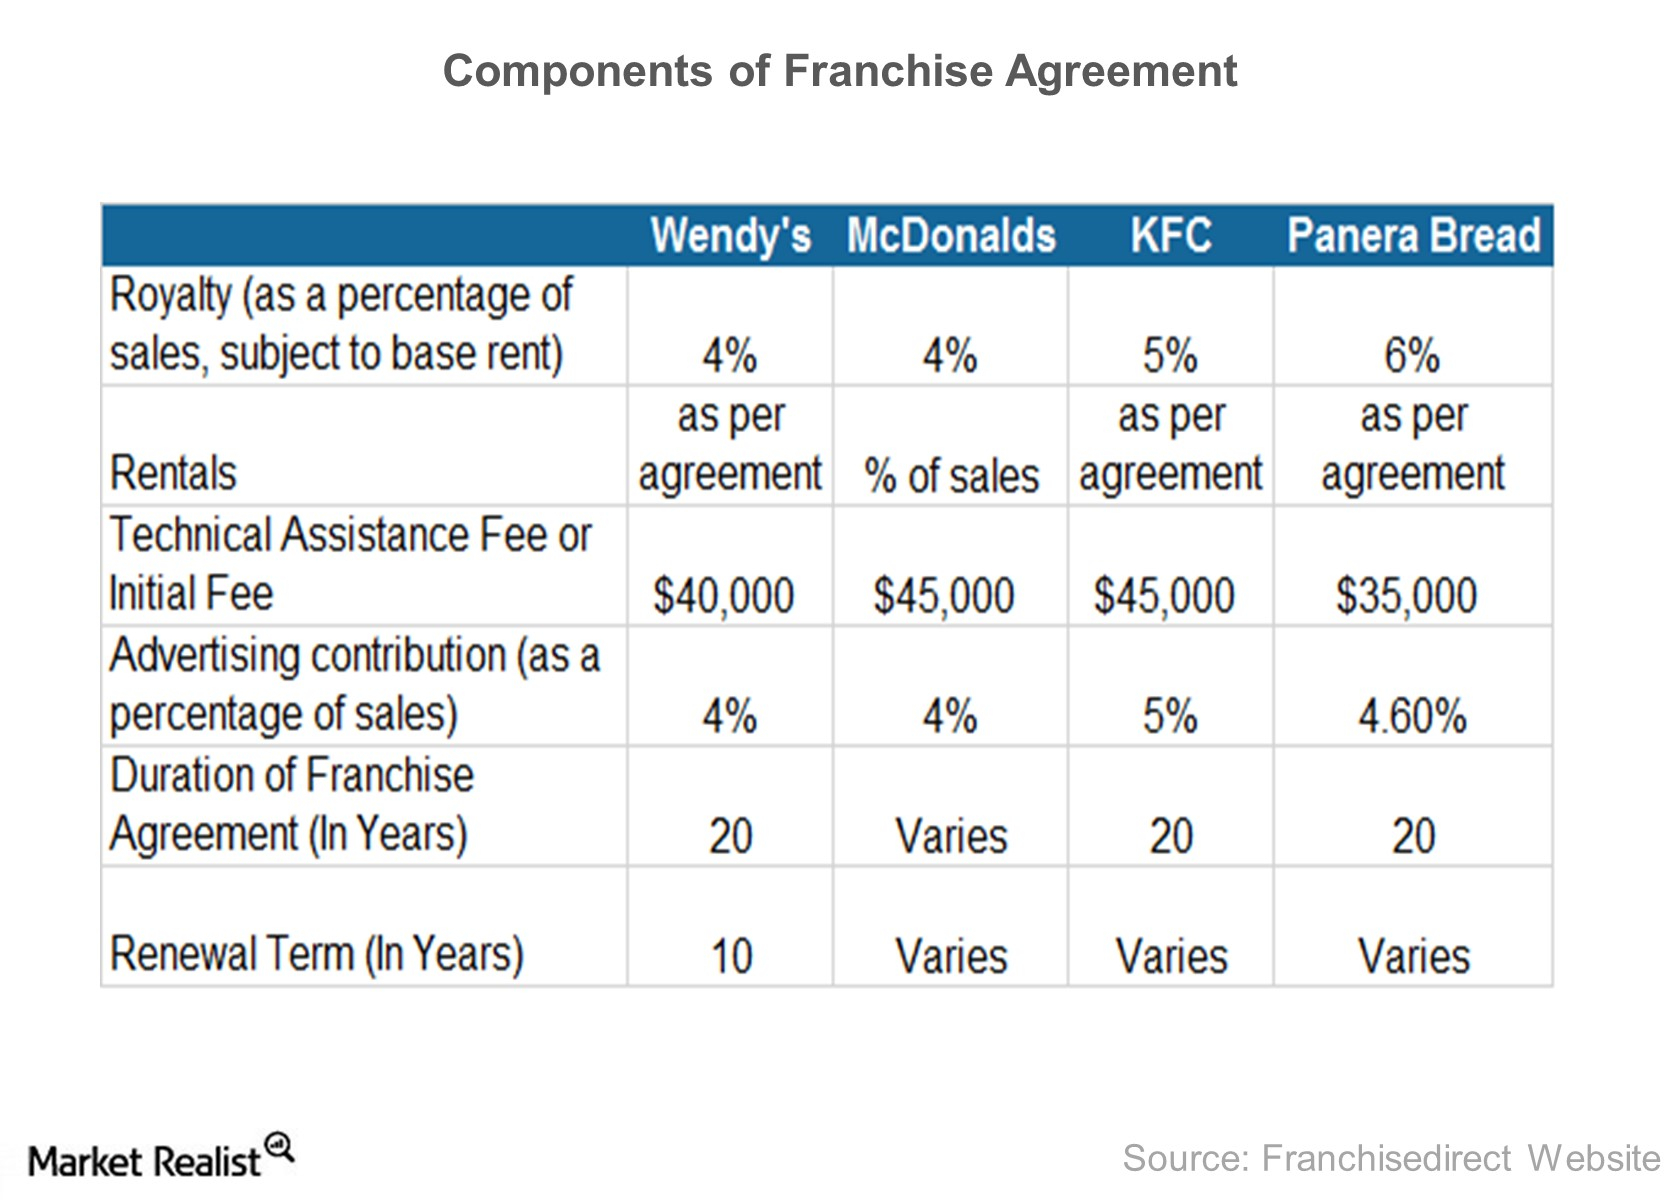 Mcdonalds Franchise Agreement Analyzing Wendys Franchise Agreements Market Realist